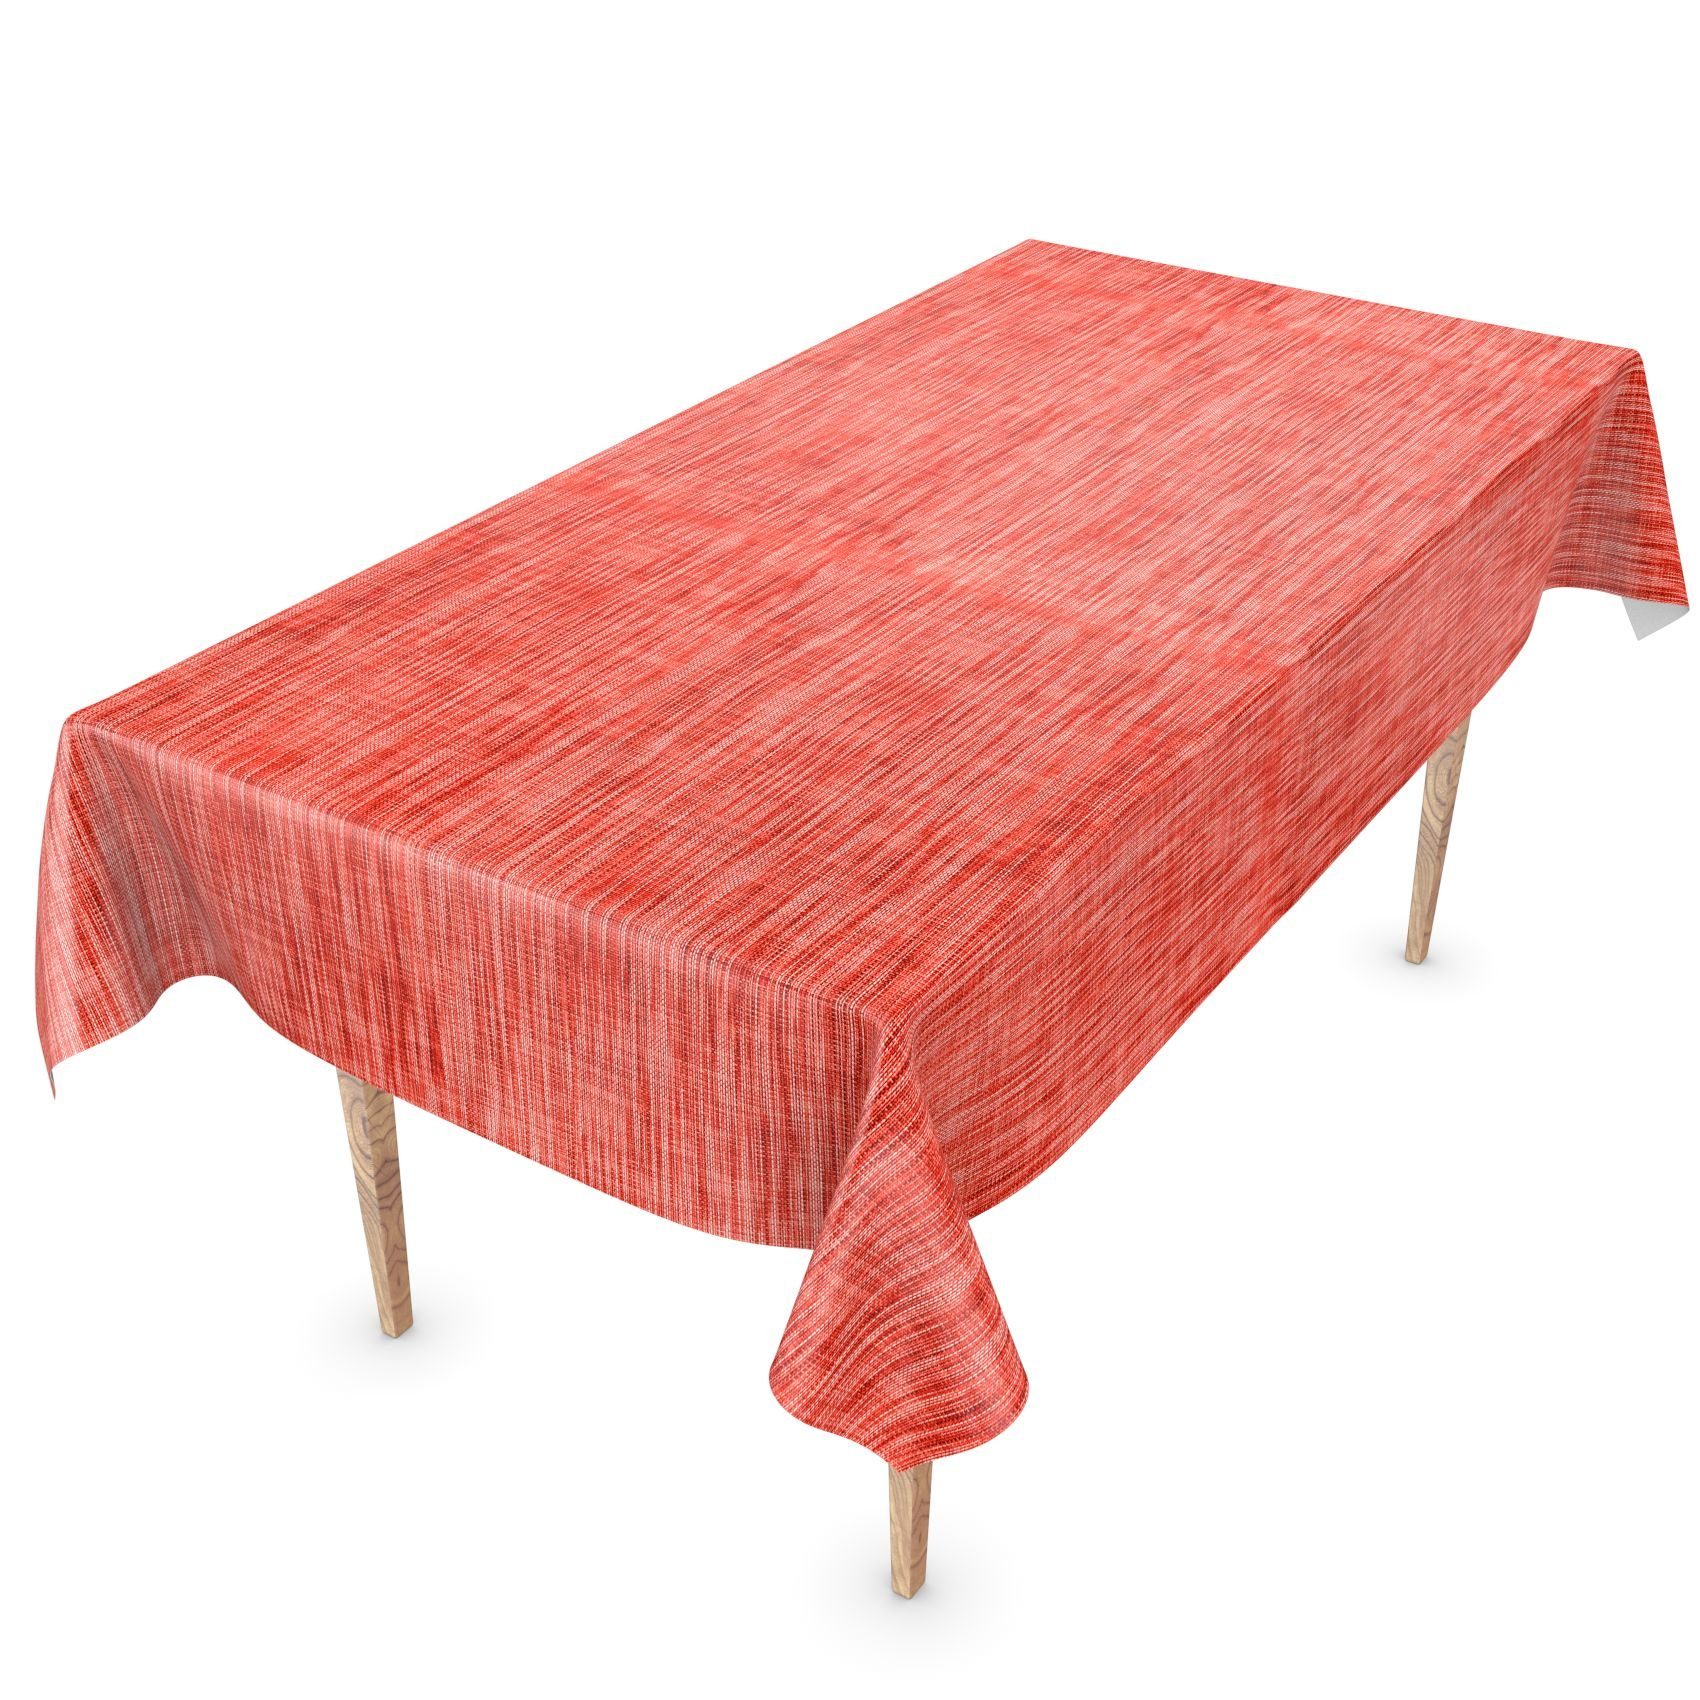 ANRO Tischdecke Tischdecke Einfarbig Rot 140, Glatt Wasserabweisend Robust Wachstuch Breite